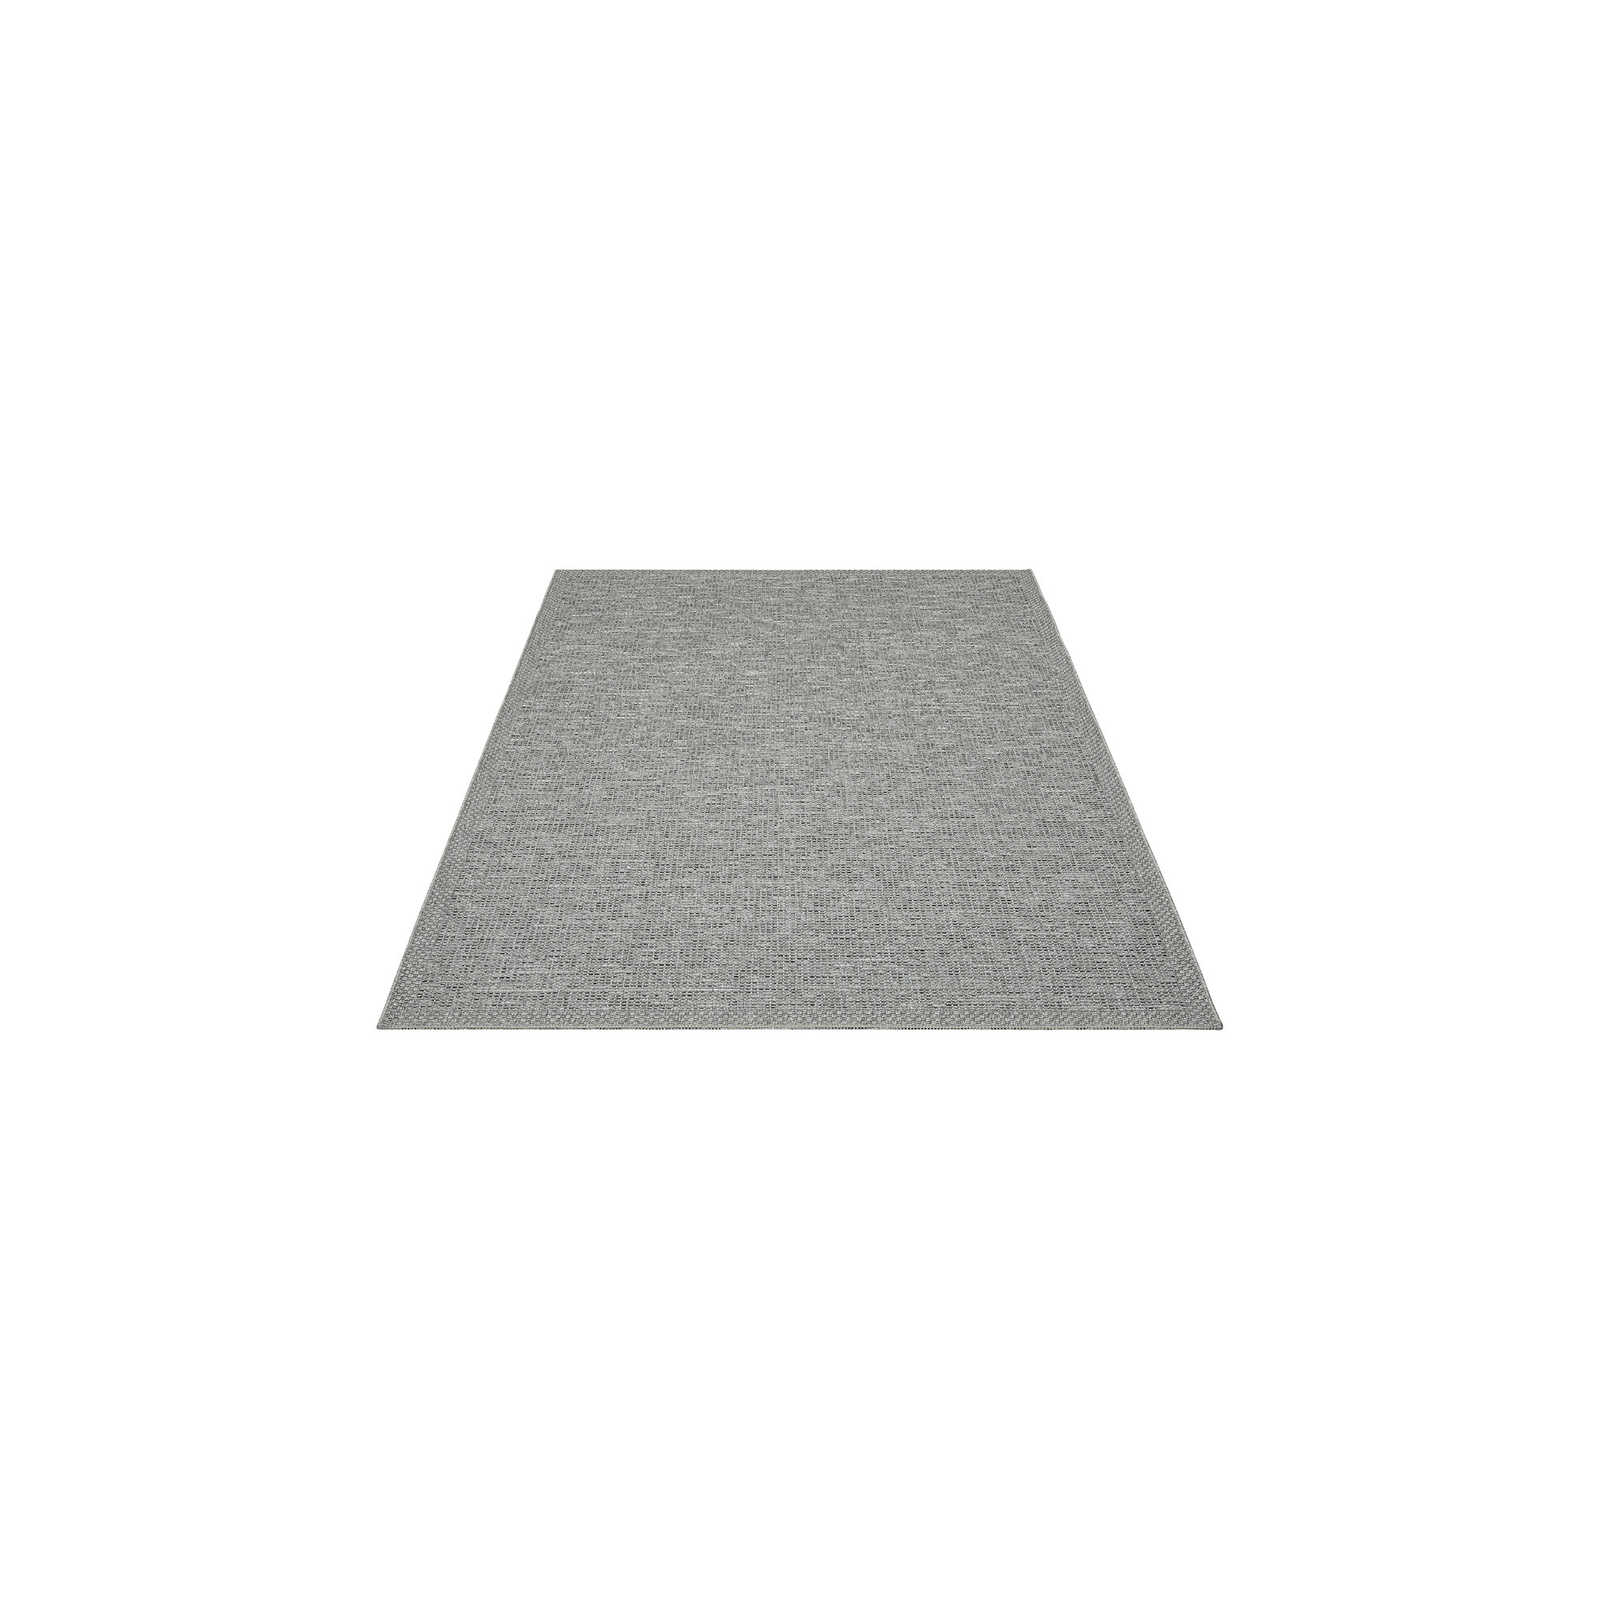 Tappeto da esterno Simple in grigio - 160 x 120 cm
